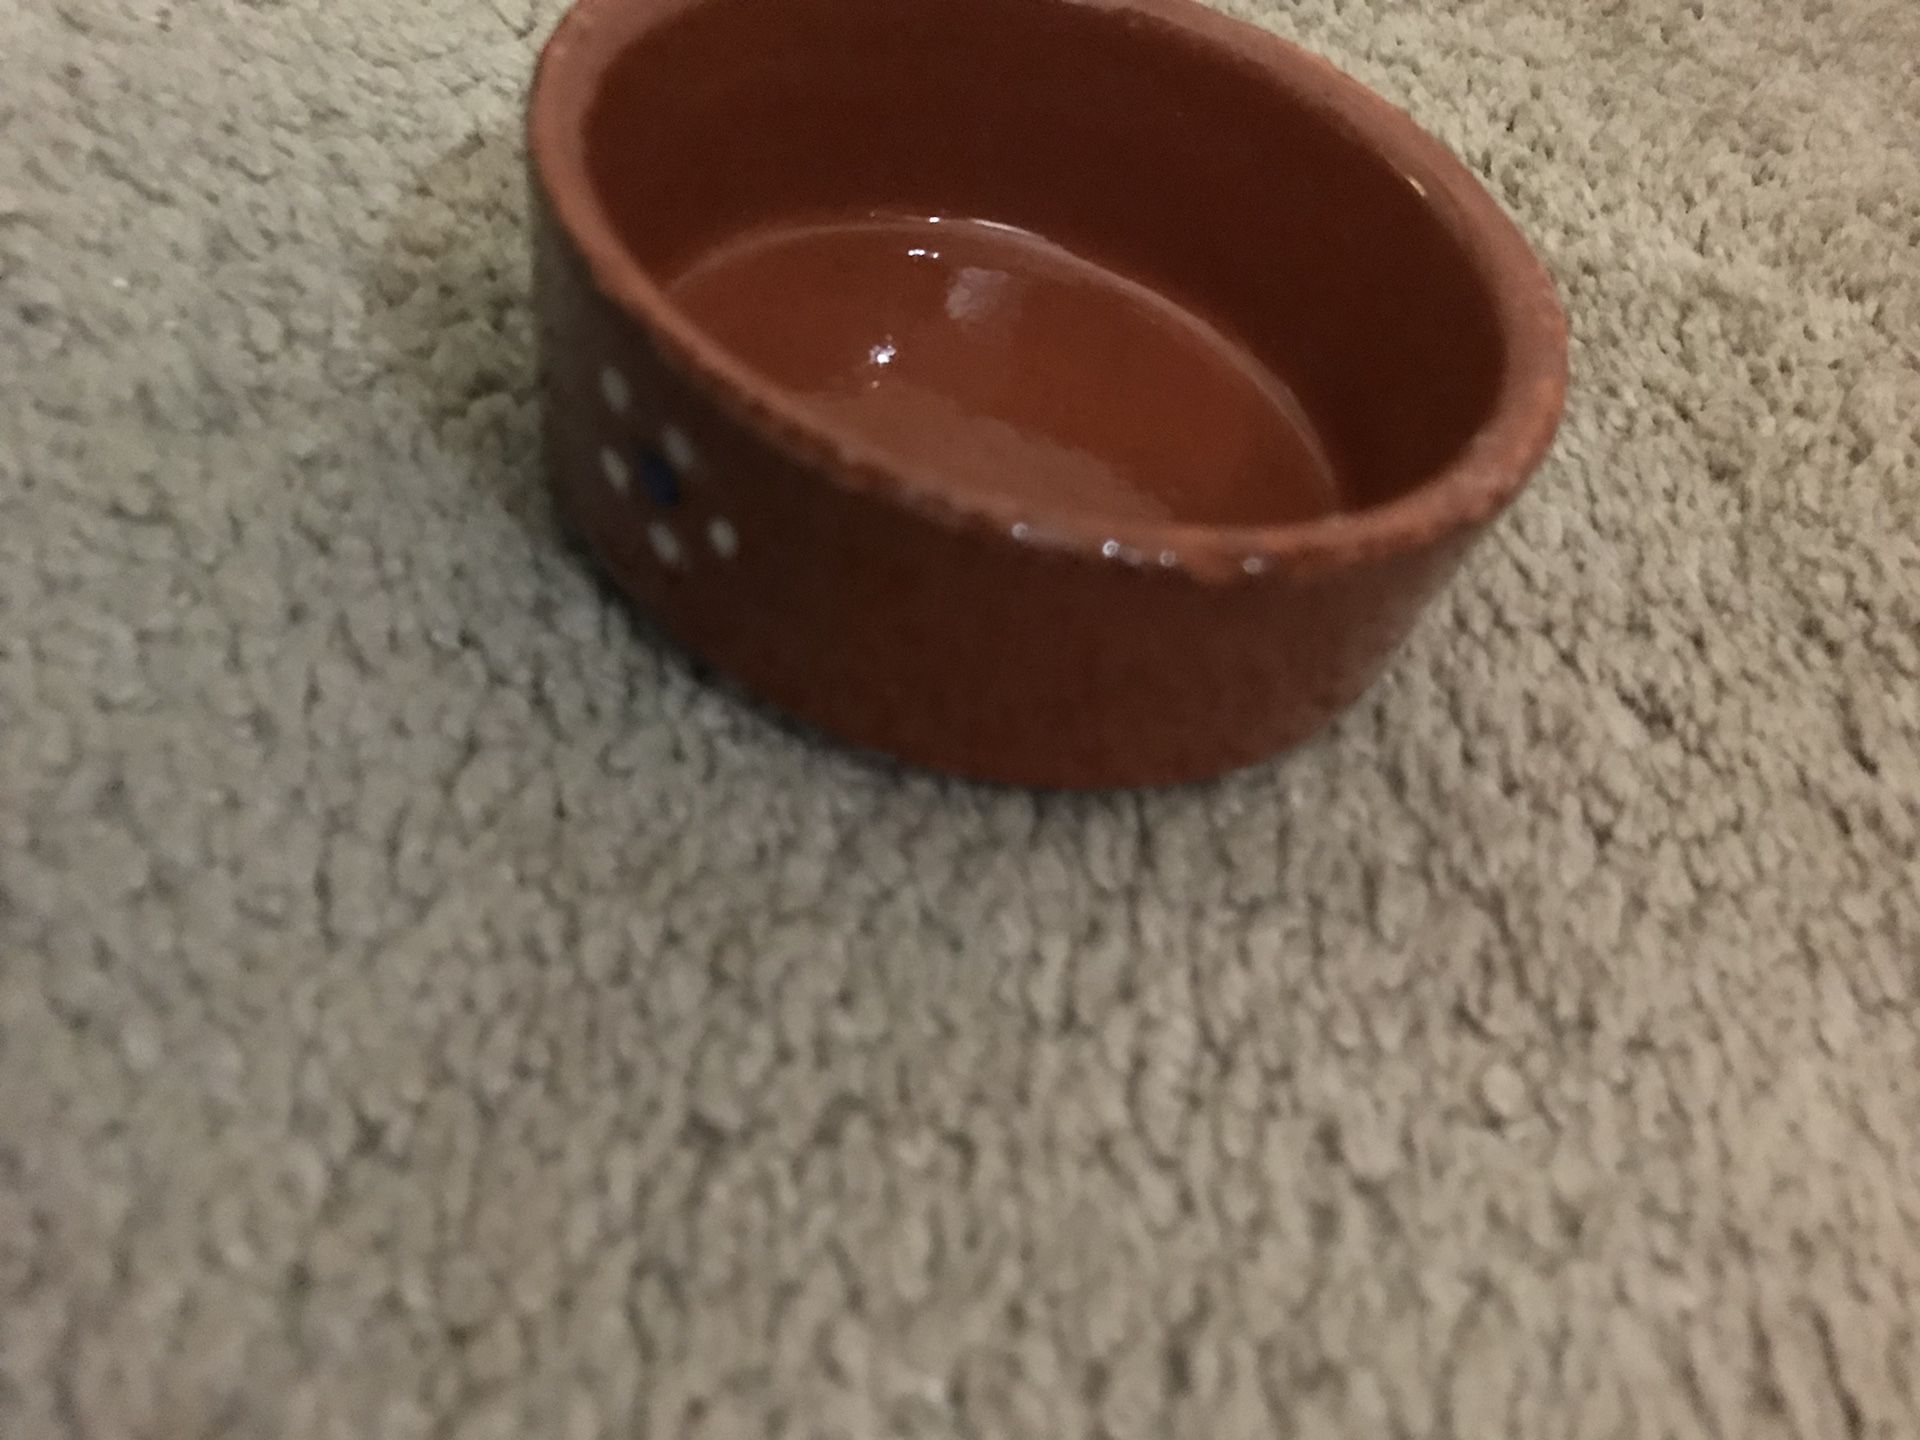 Small bowl